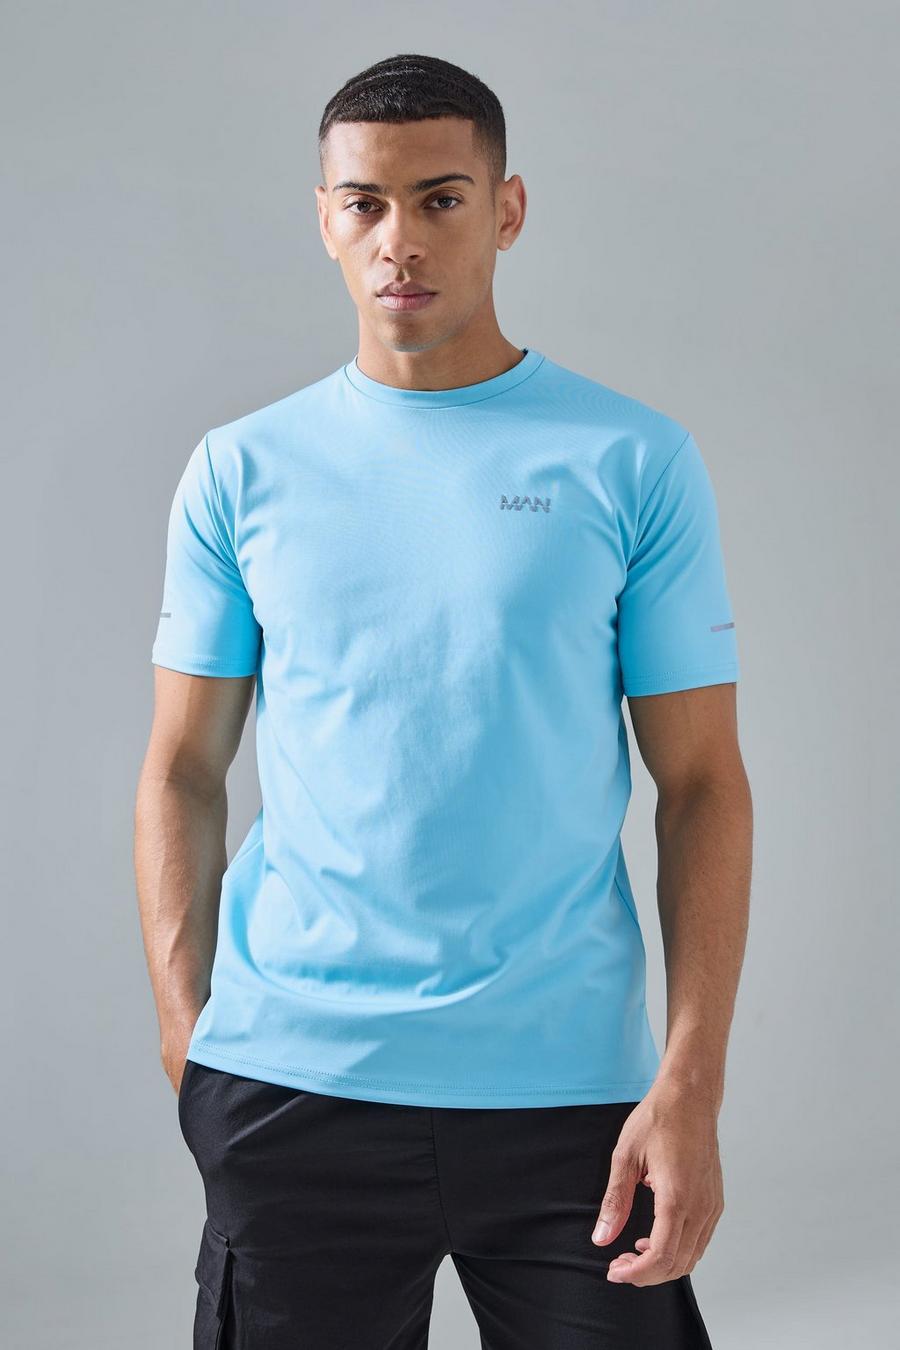 Man Active Performance T-Shirt, Aqua